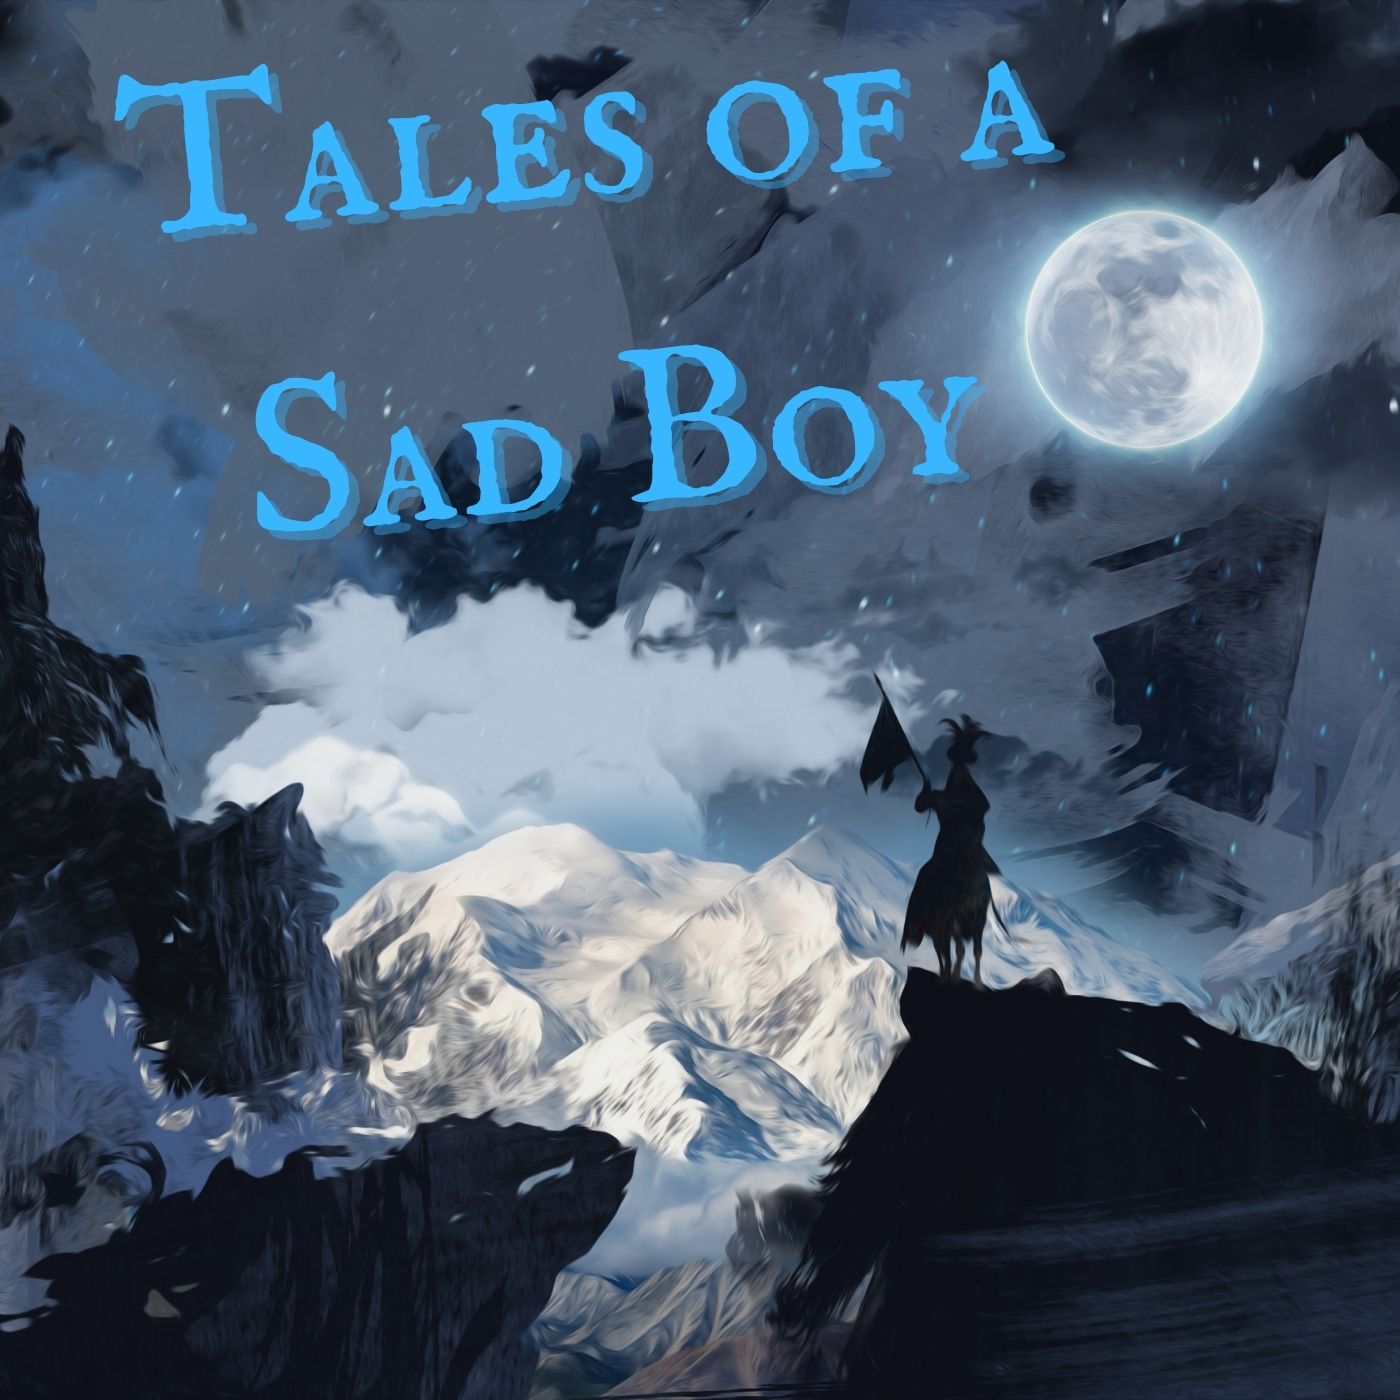 I Love ghost pubblicano il nuovo Ep “Tales of a Sad Boy”